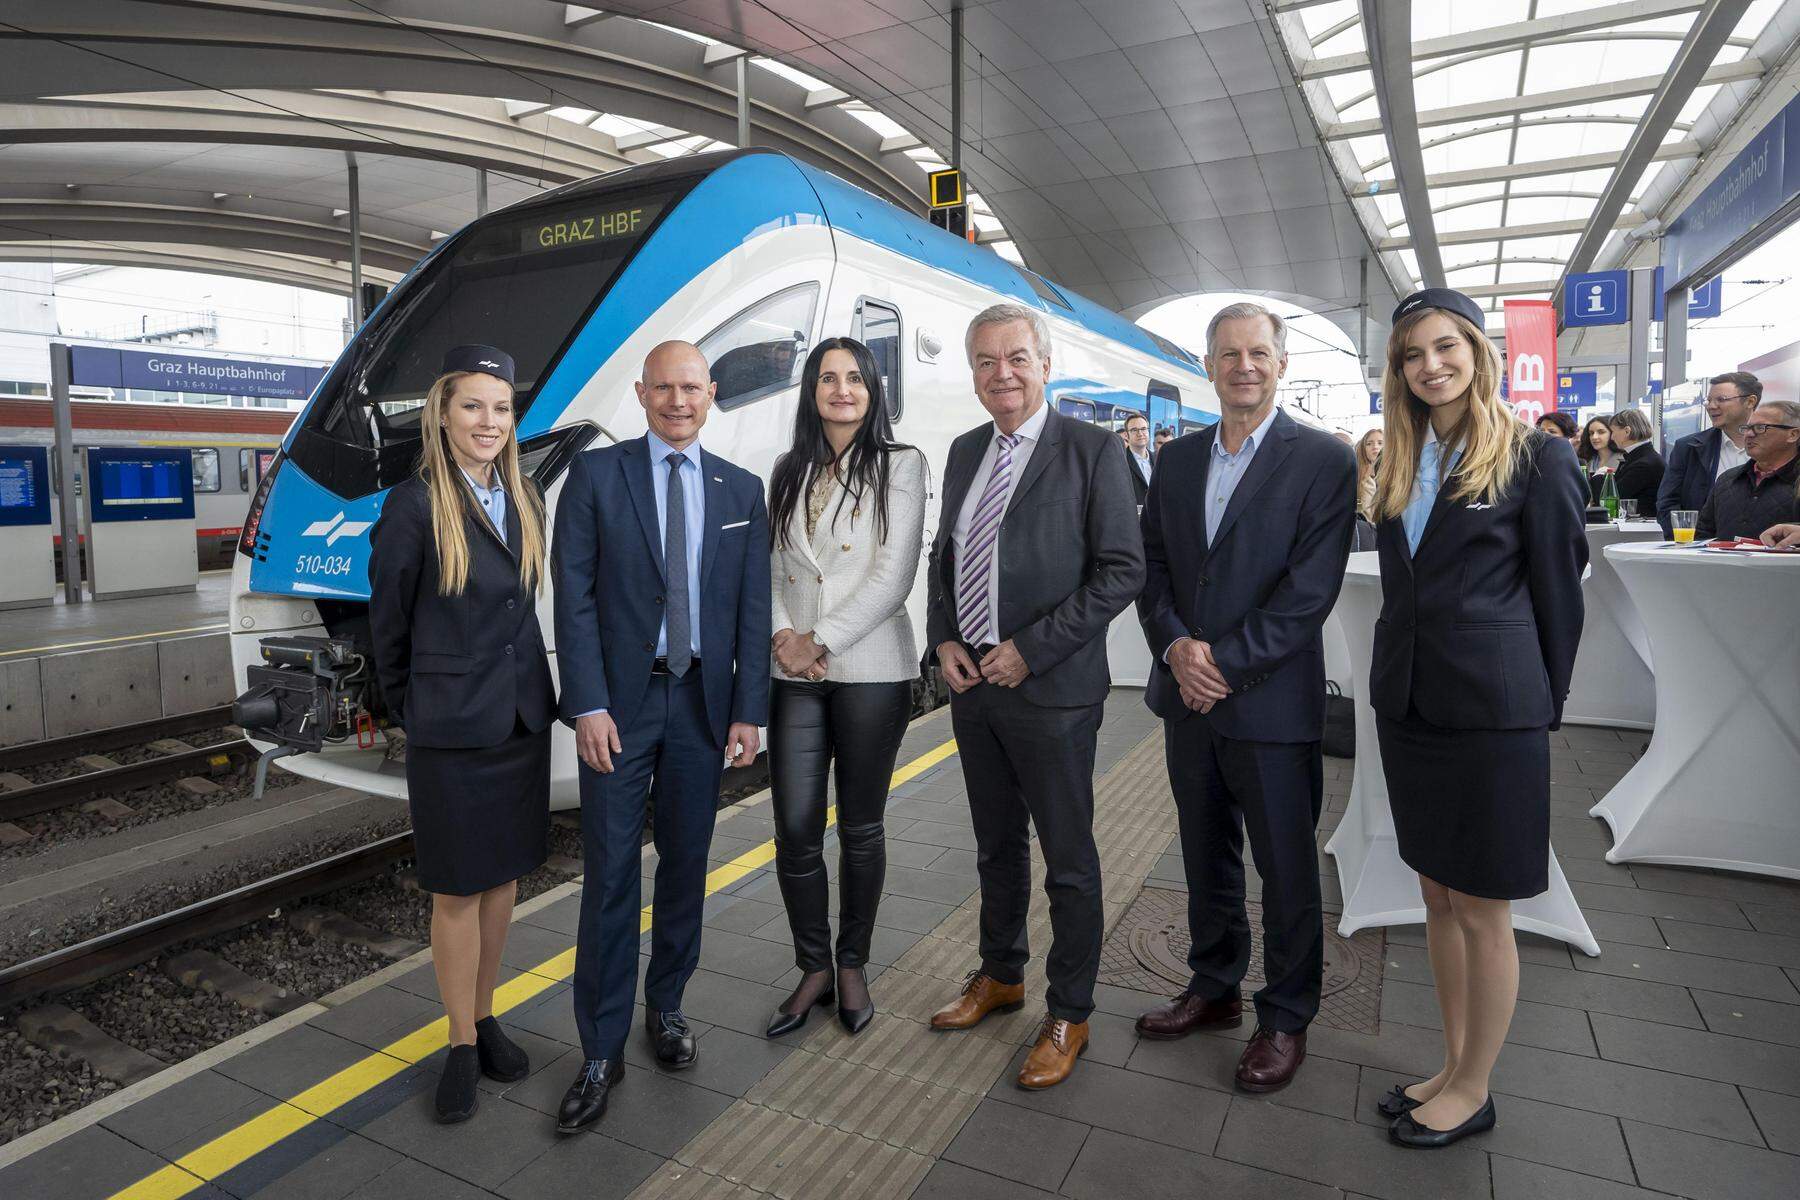 Stundentakt als Ziel: Neue Züge schaffen Direktverbindung zwischen Graz und Ljubljana